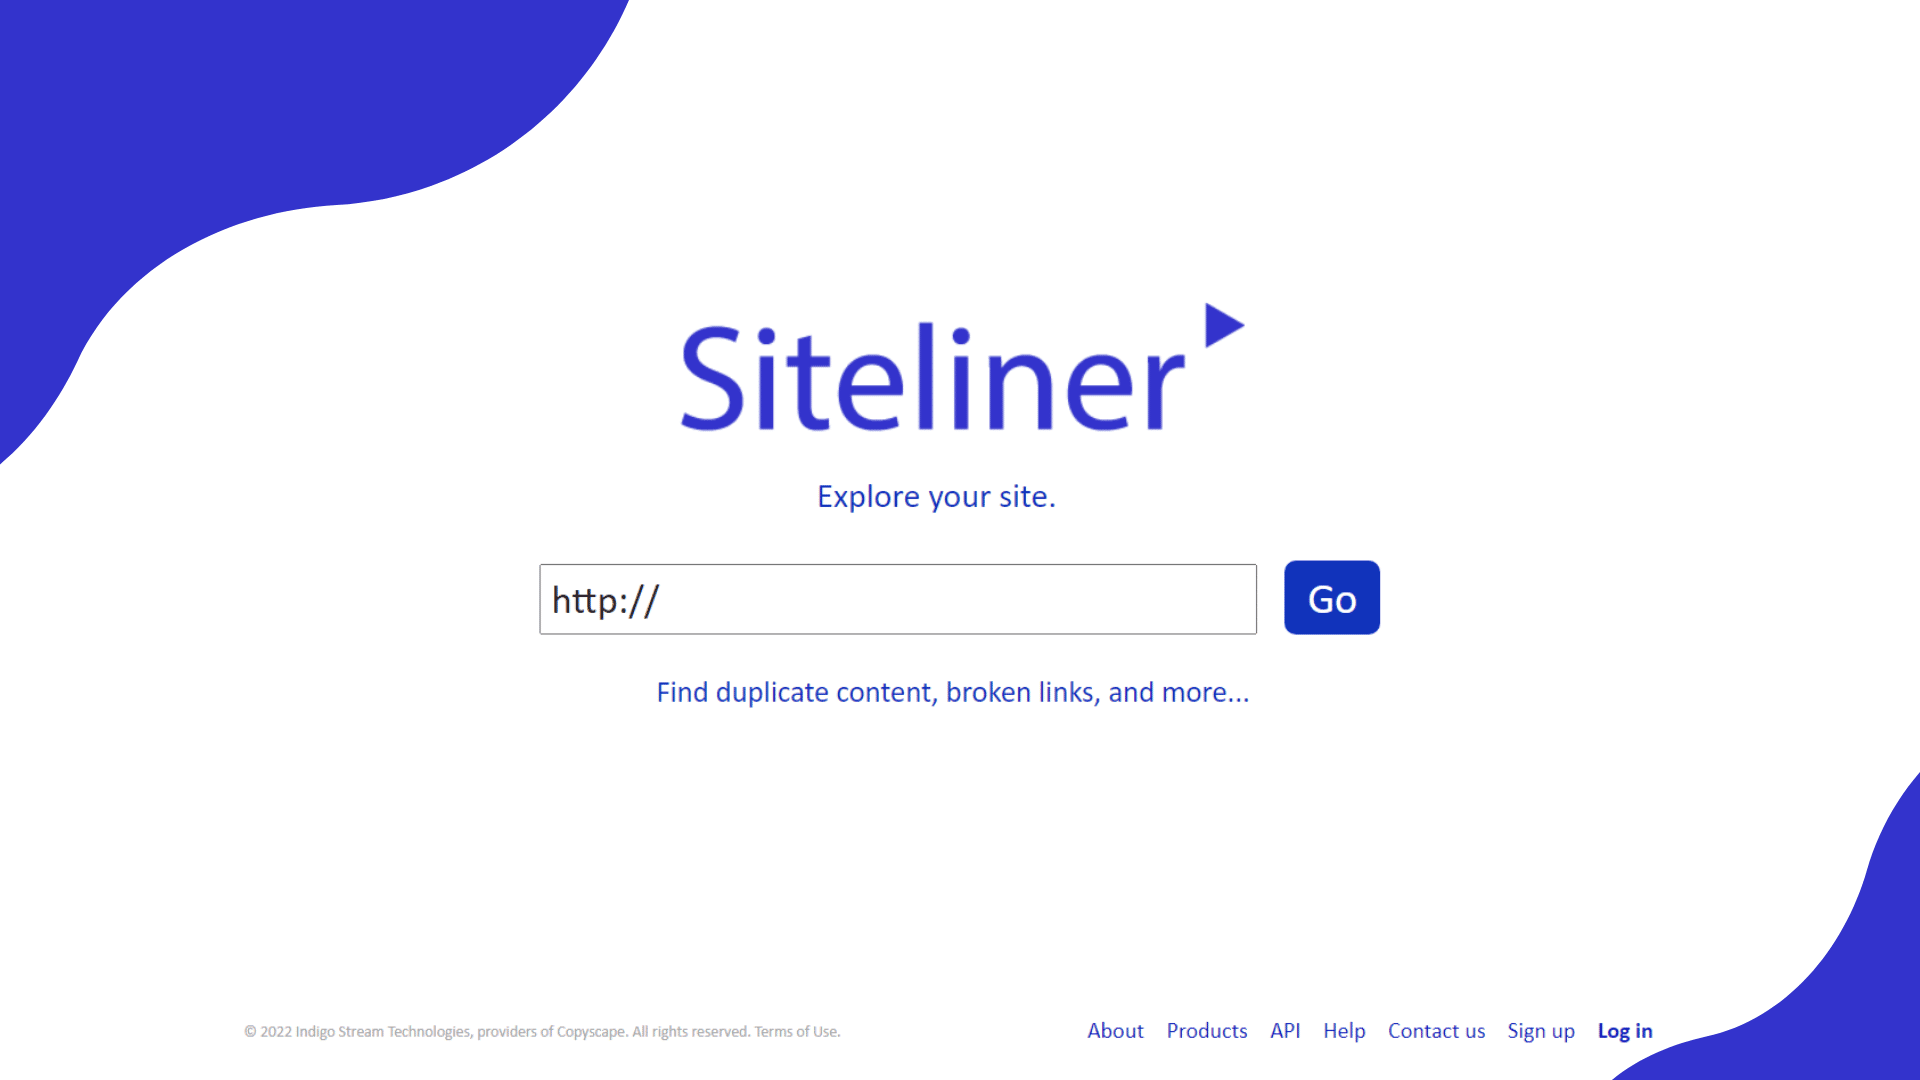 Siteliner Features